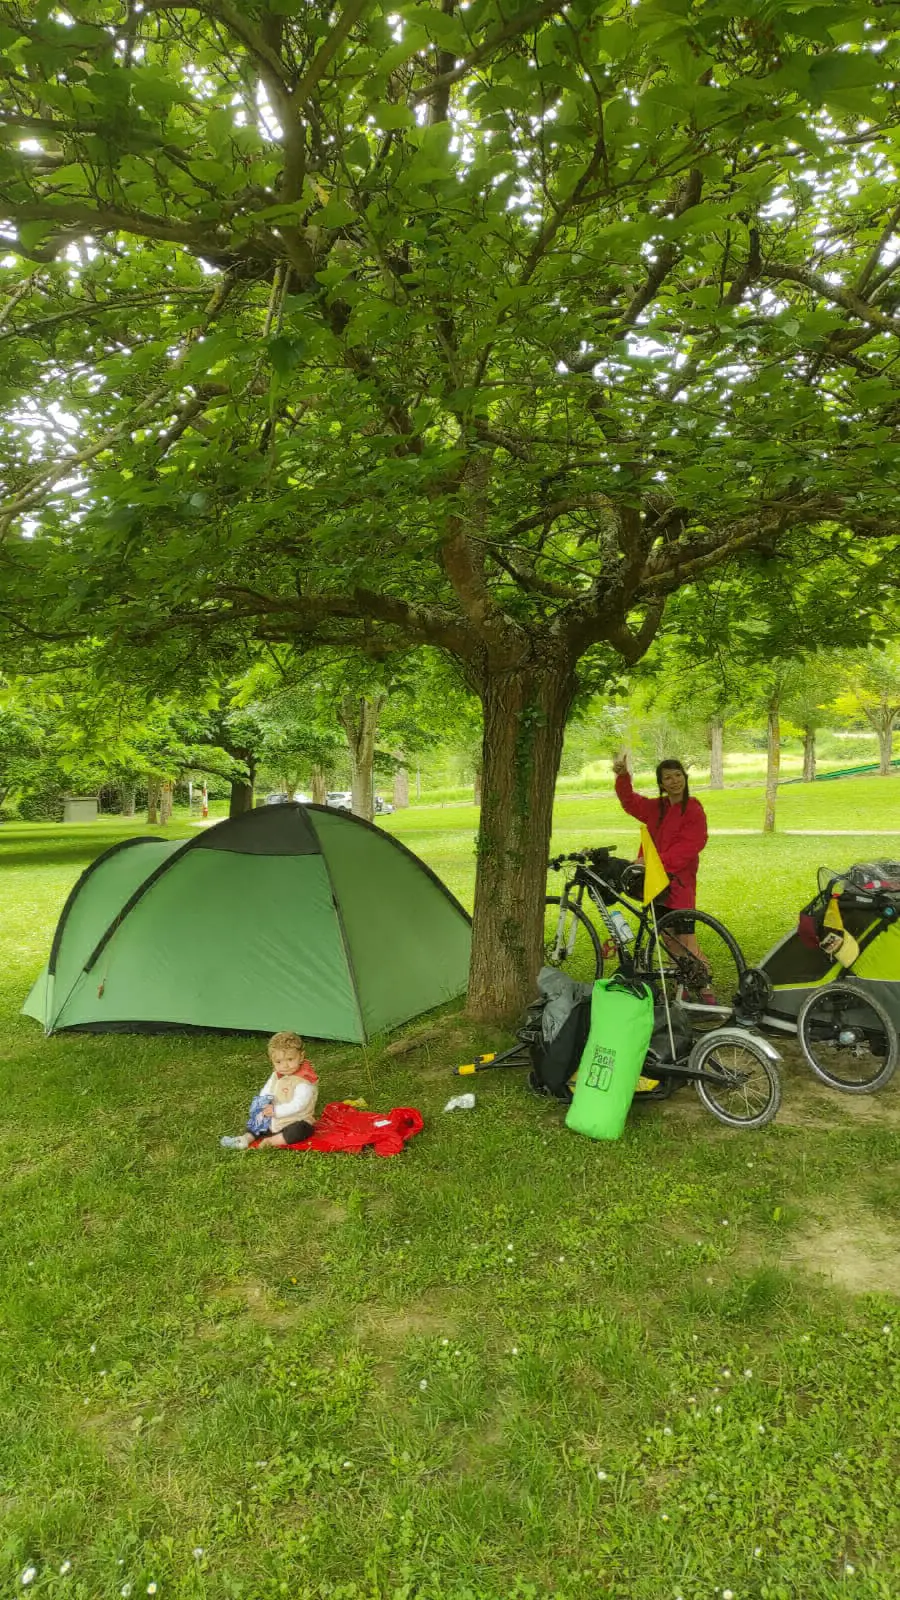 Giù dalla sella, tutti in tenda: l'avventura quotidiana della @famigliaonbike